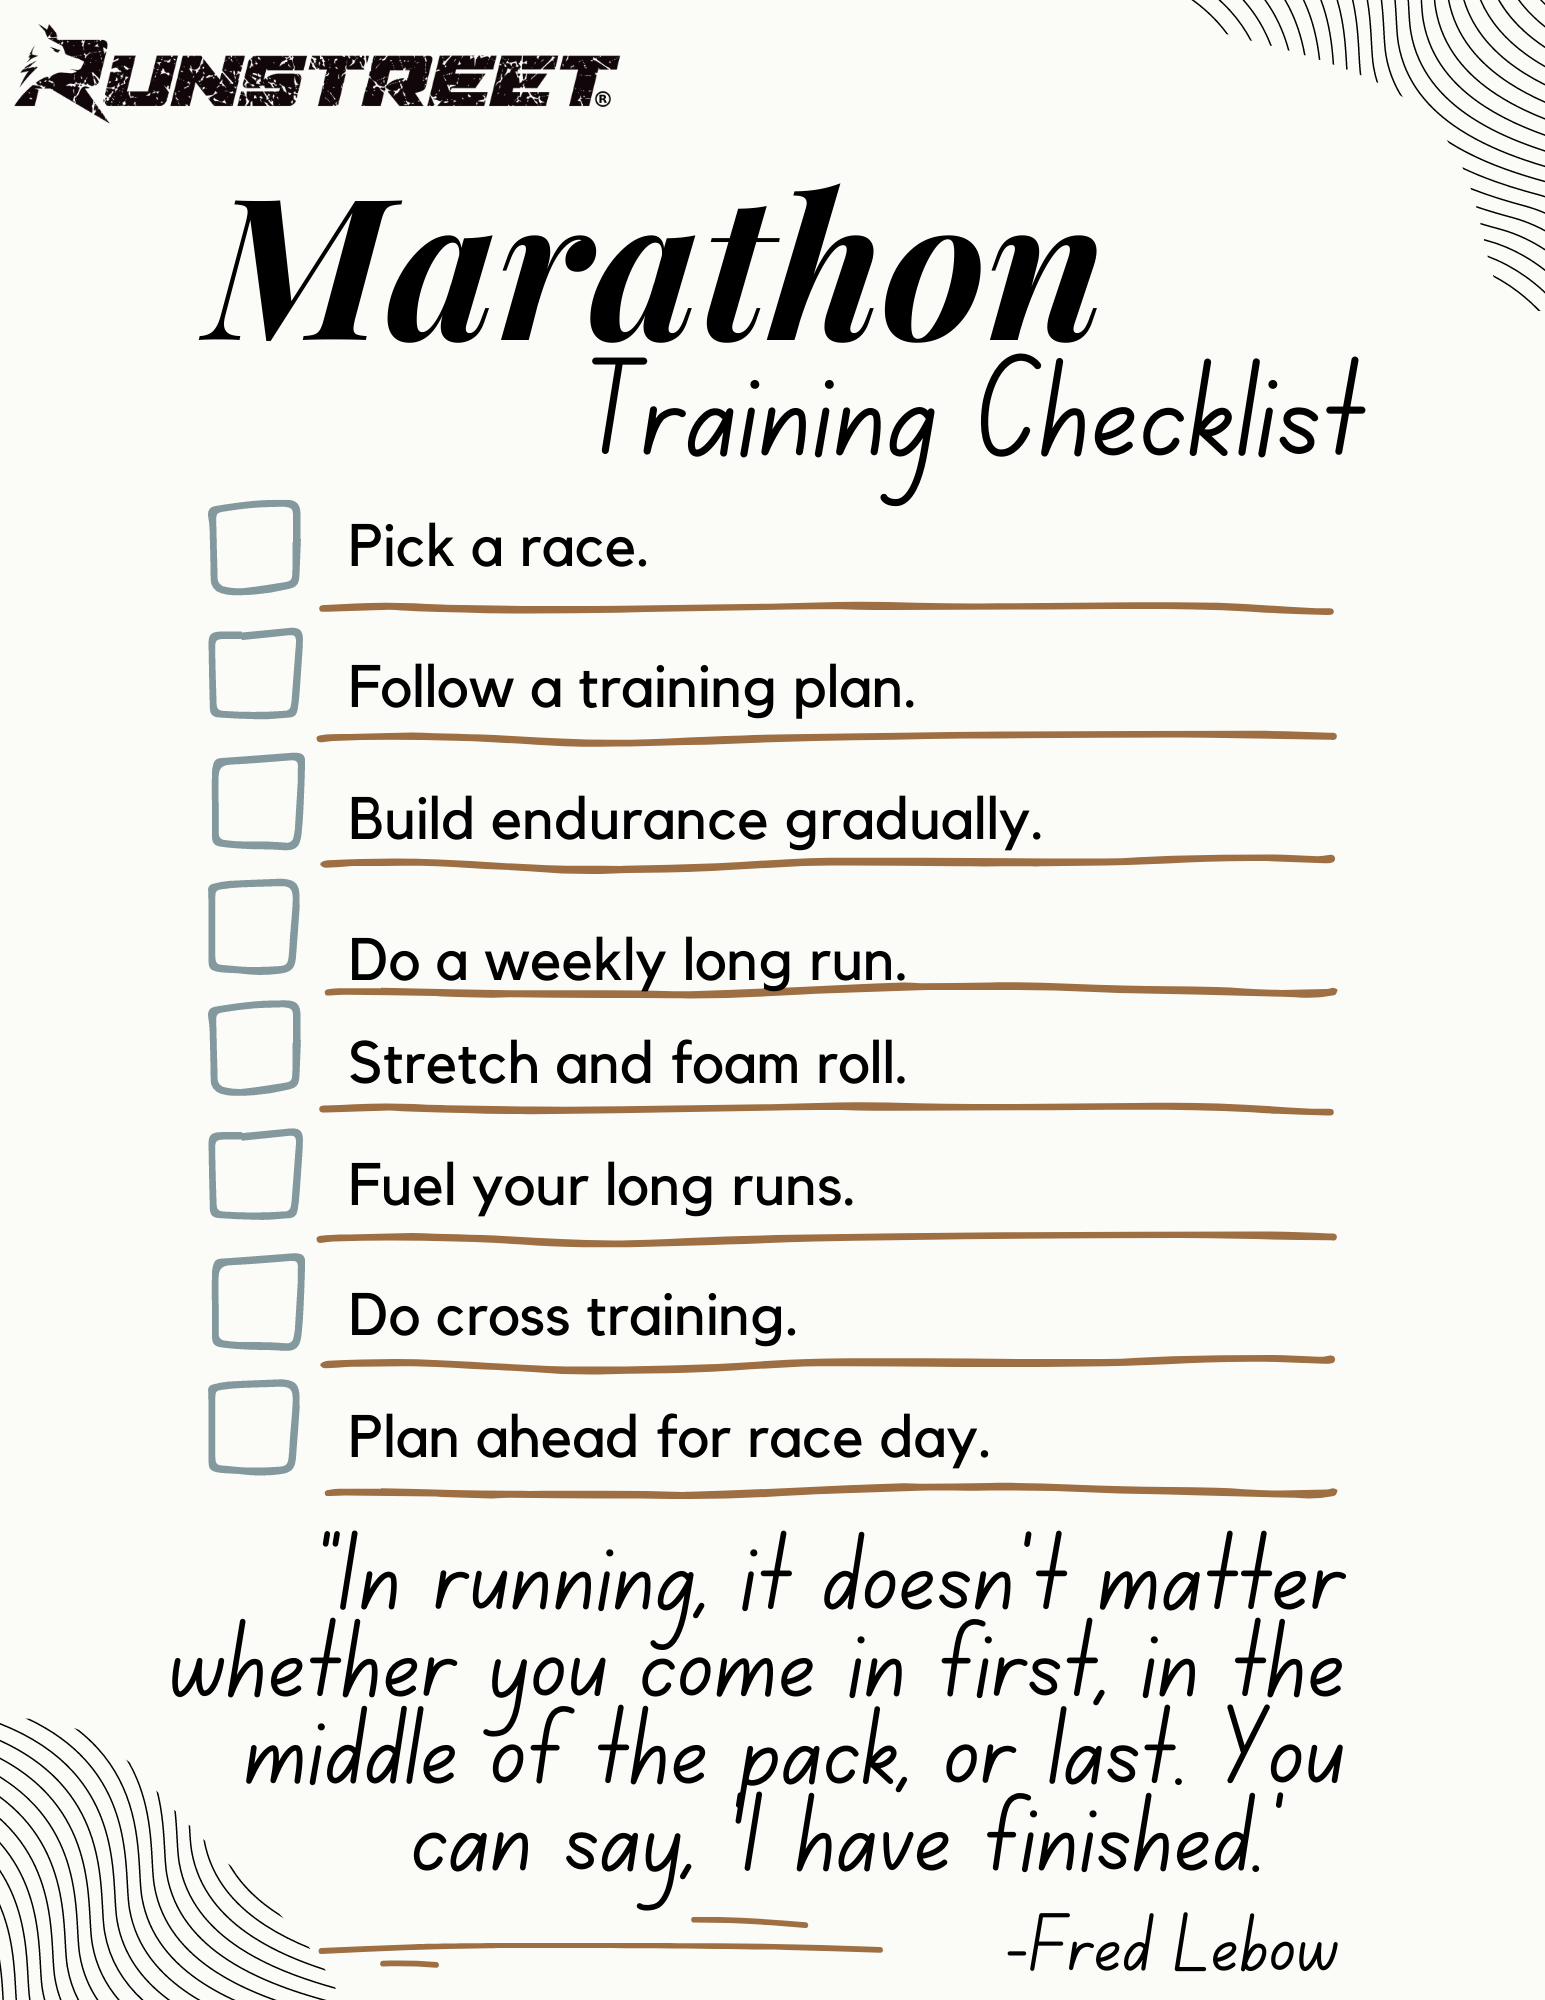 Training For a Marathon: How To Prepare